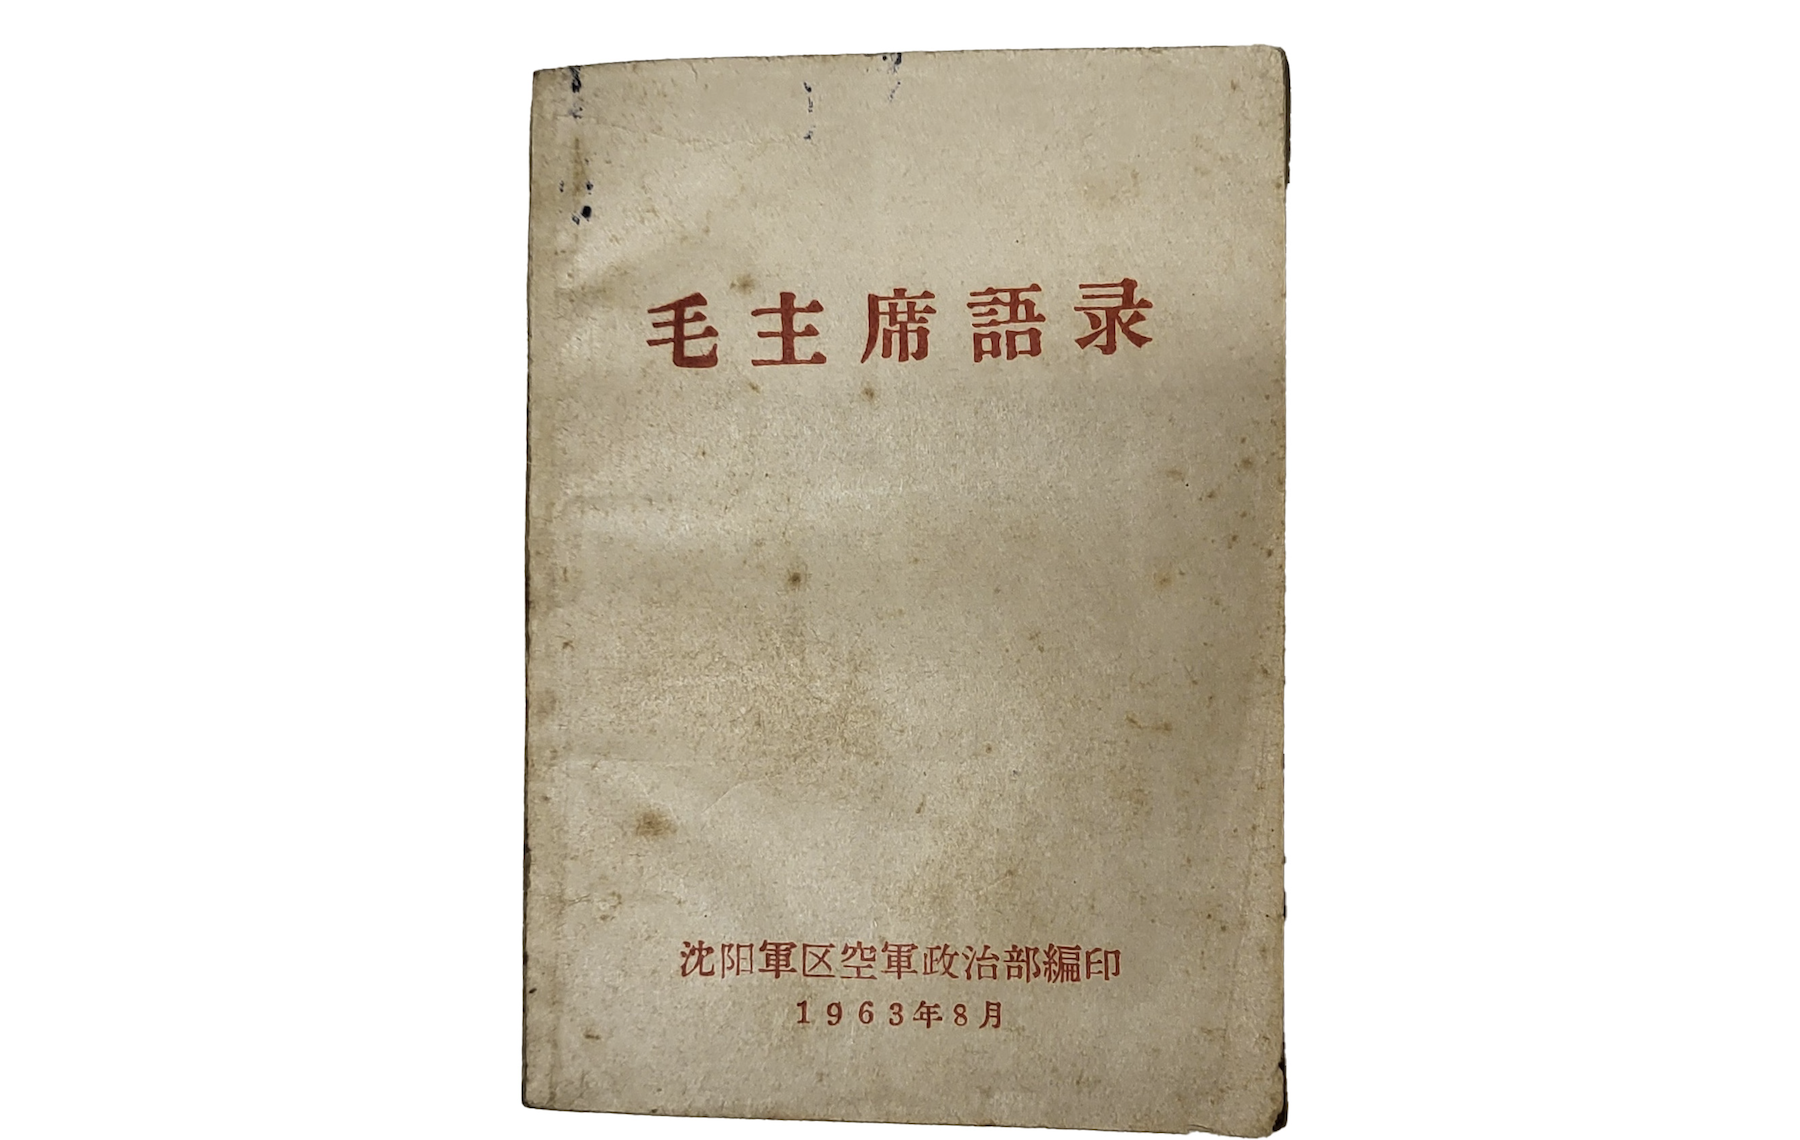 《毛澤東語錄》罕見原始版本 倫敦拍賣叫價破百萬